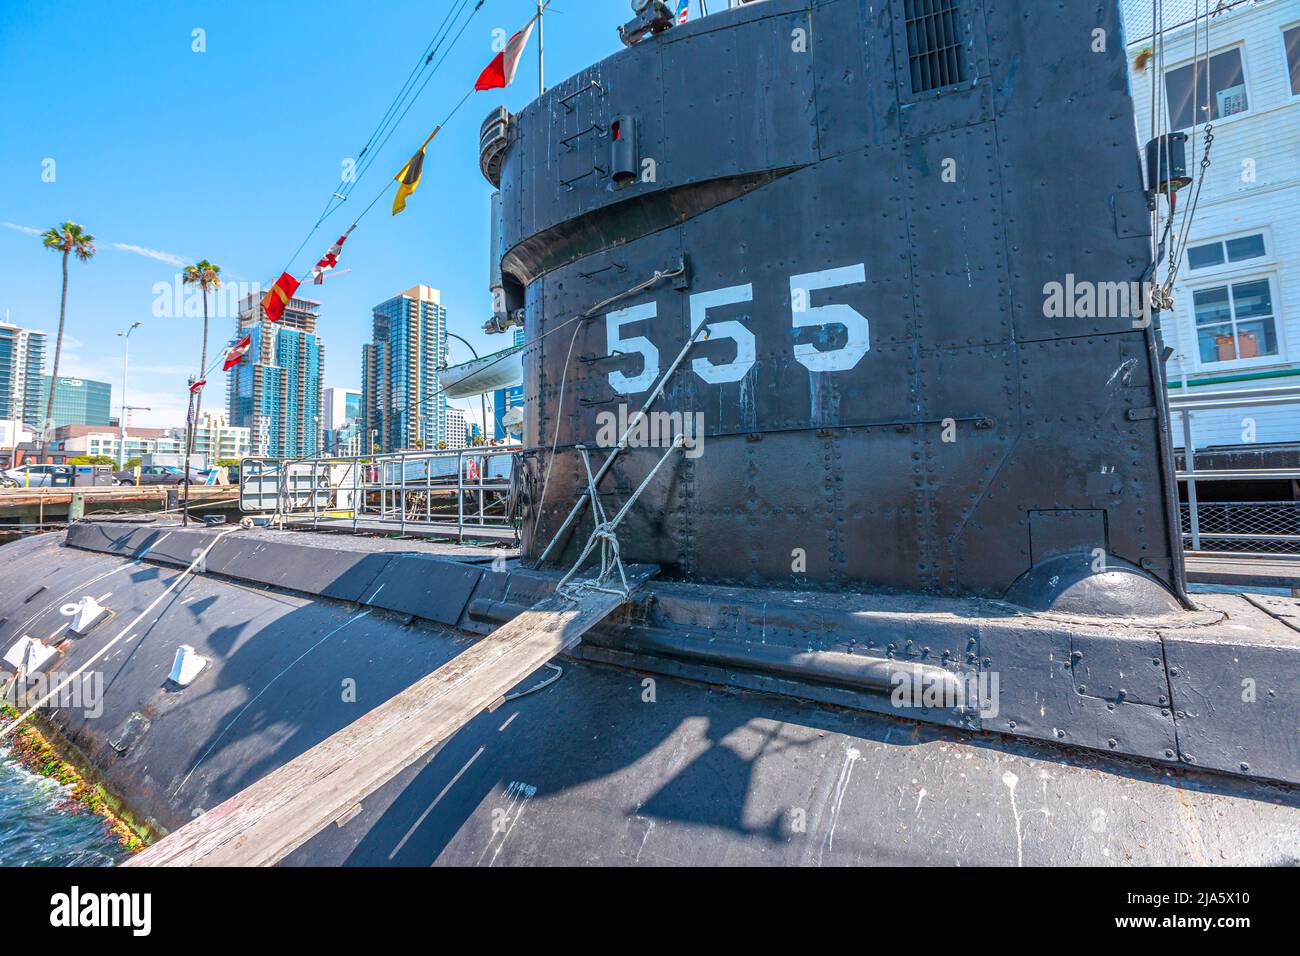 San Diego, Navy Pier, Californie, États-Unis - 1 août 2018 : USS Dolphin AGSS-555 sous-marin américain de la Marine des États-Unis au Musée maritime de San Diego Banque D'Images